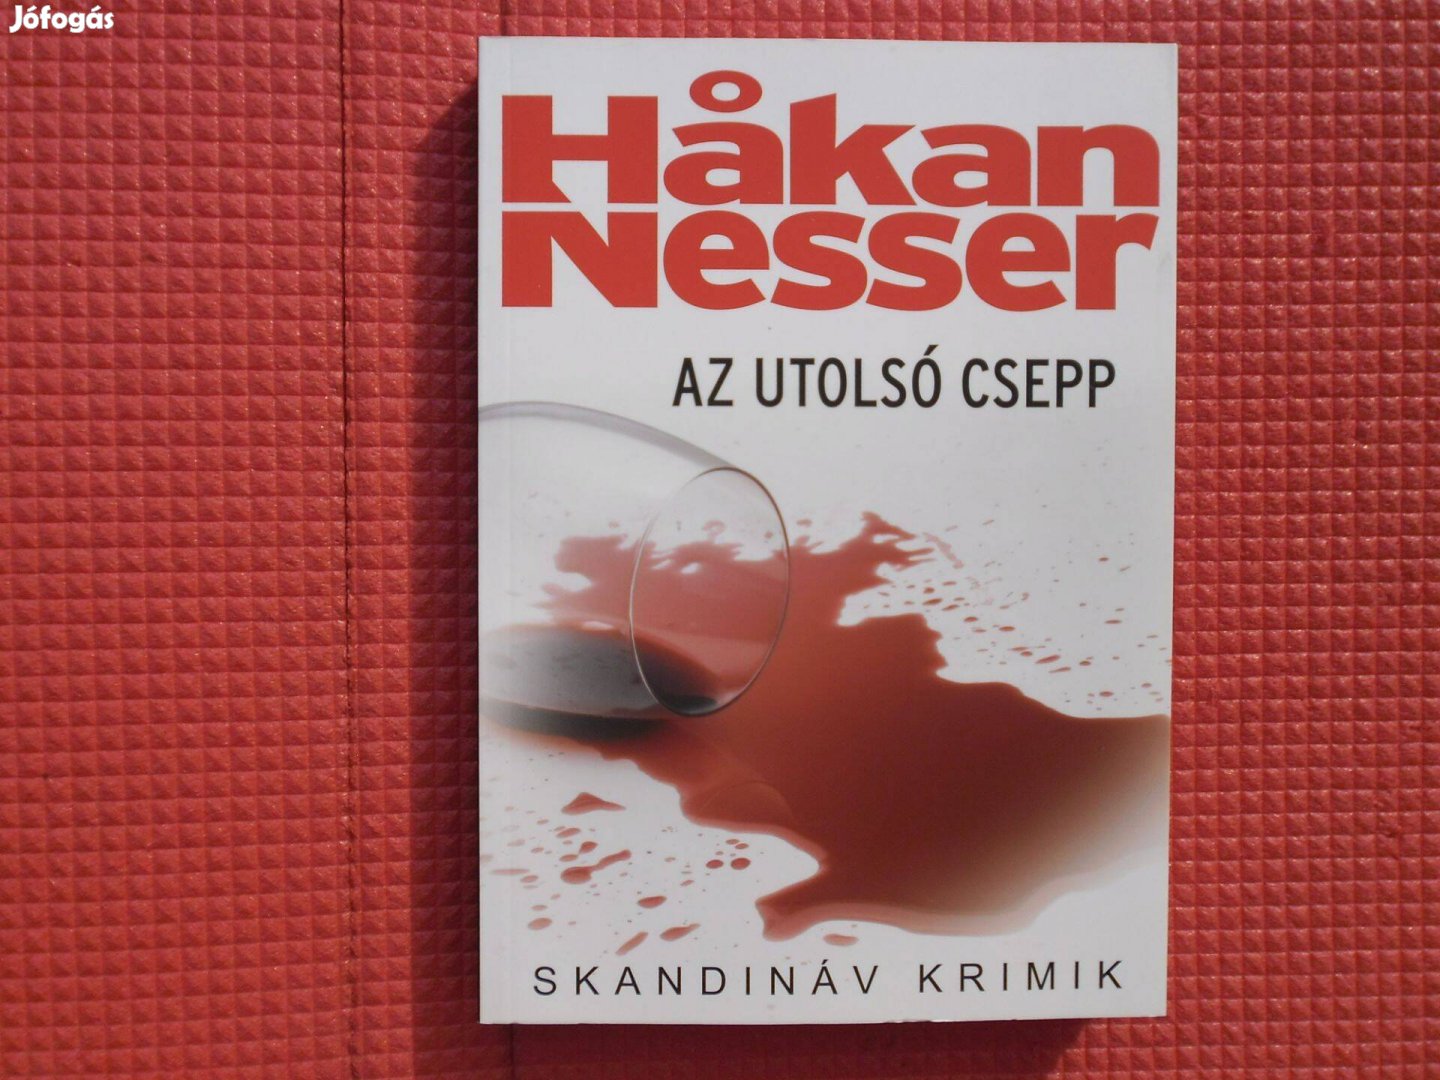 Hakan Nesser: Az utolsó csepp /Skandináv krimik/